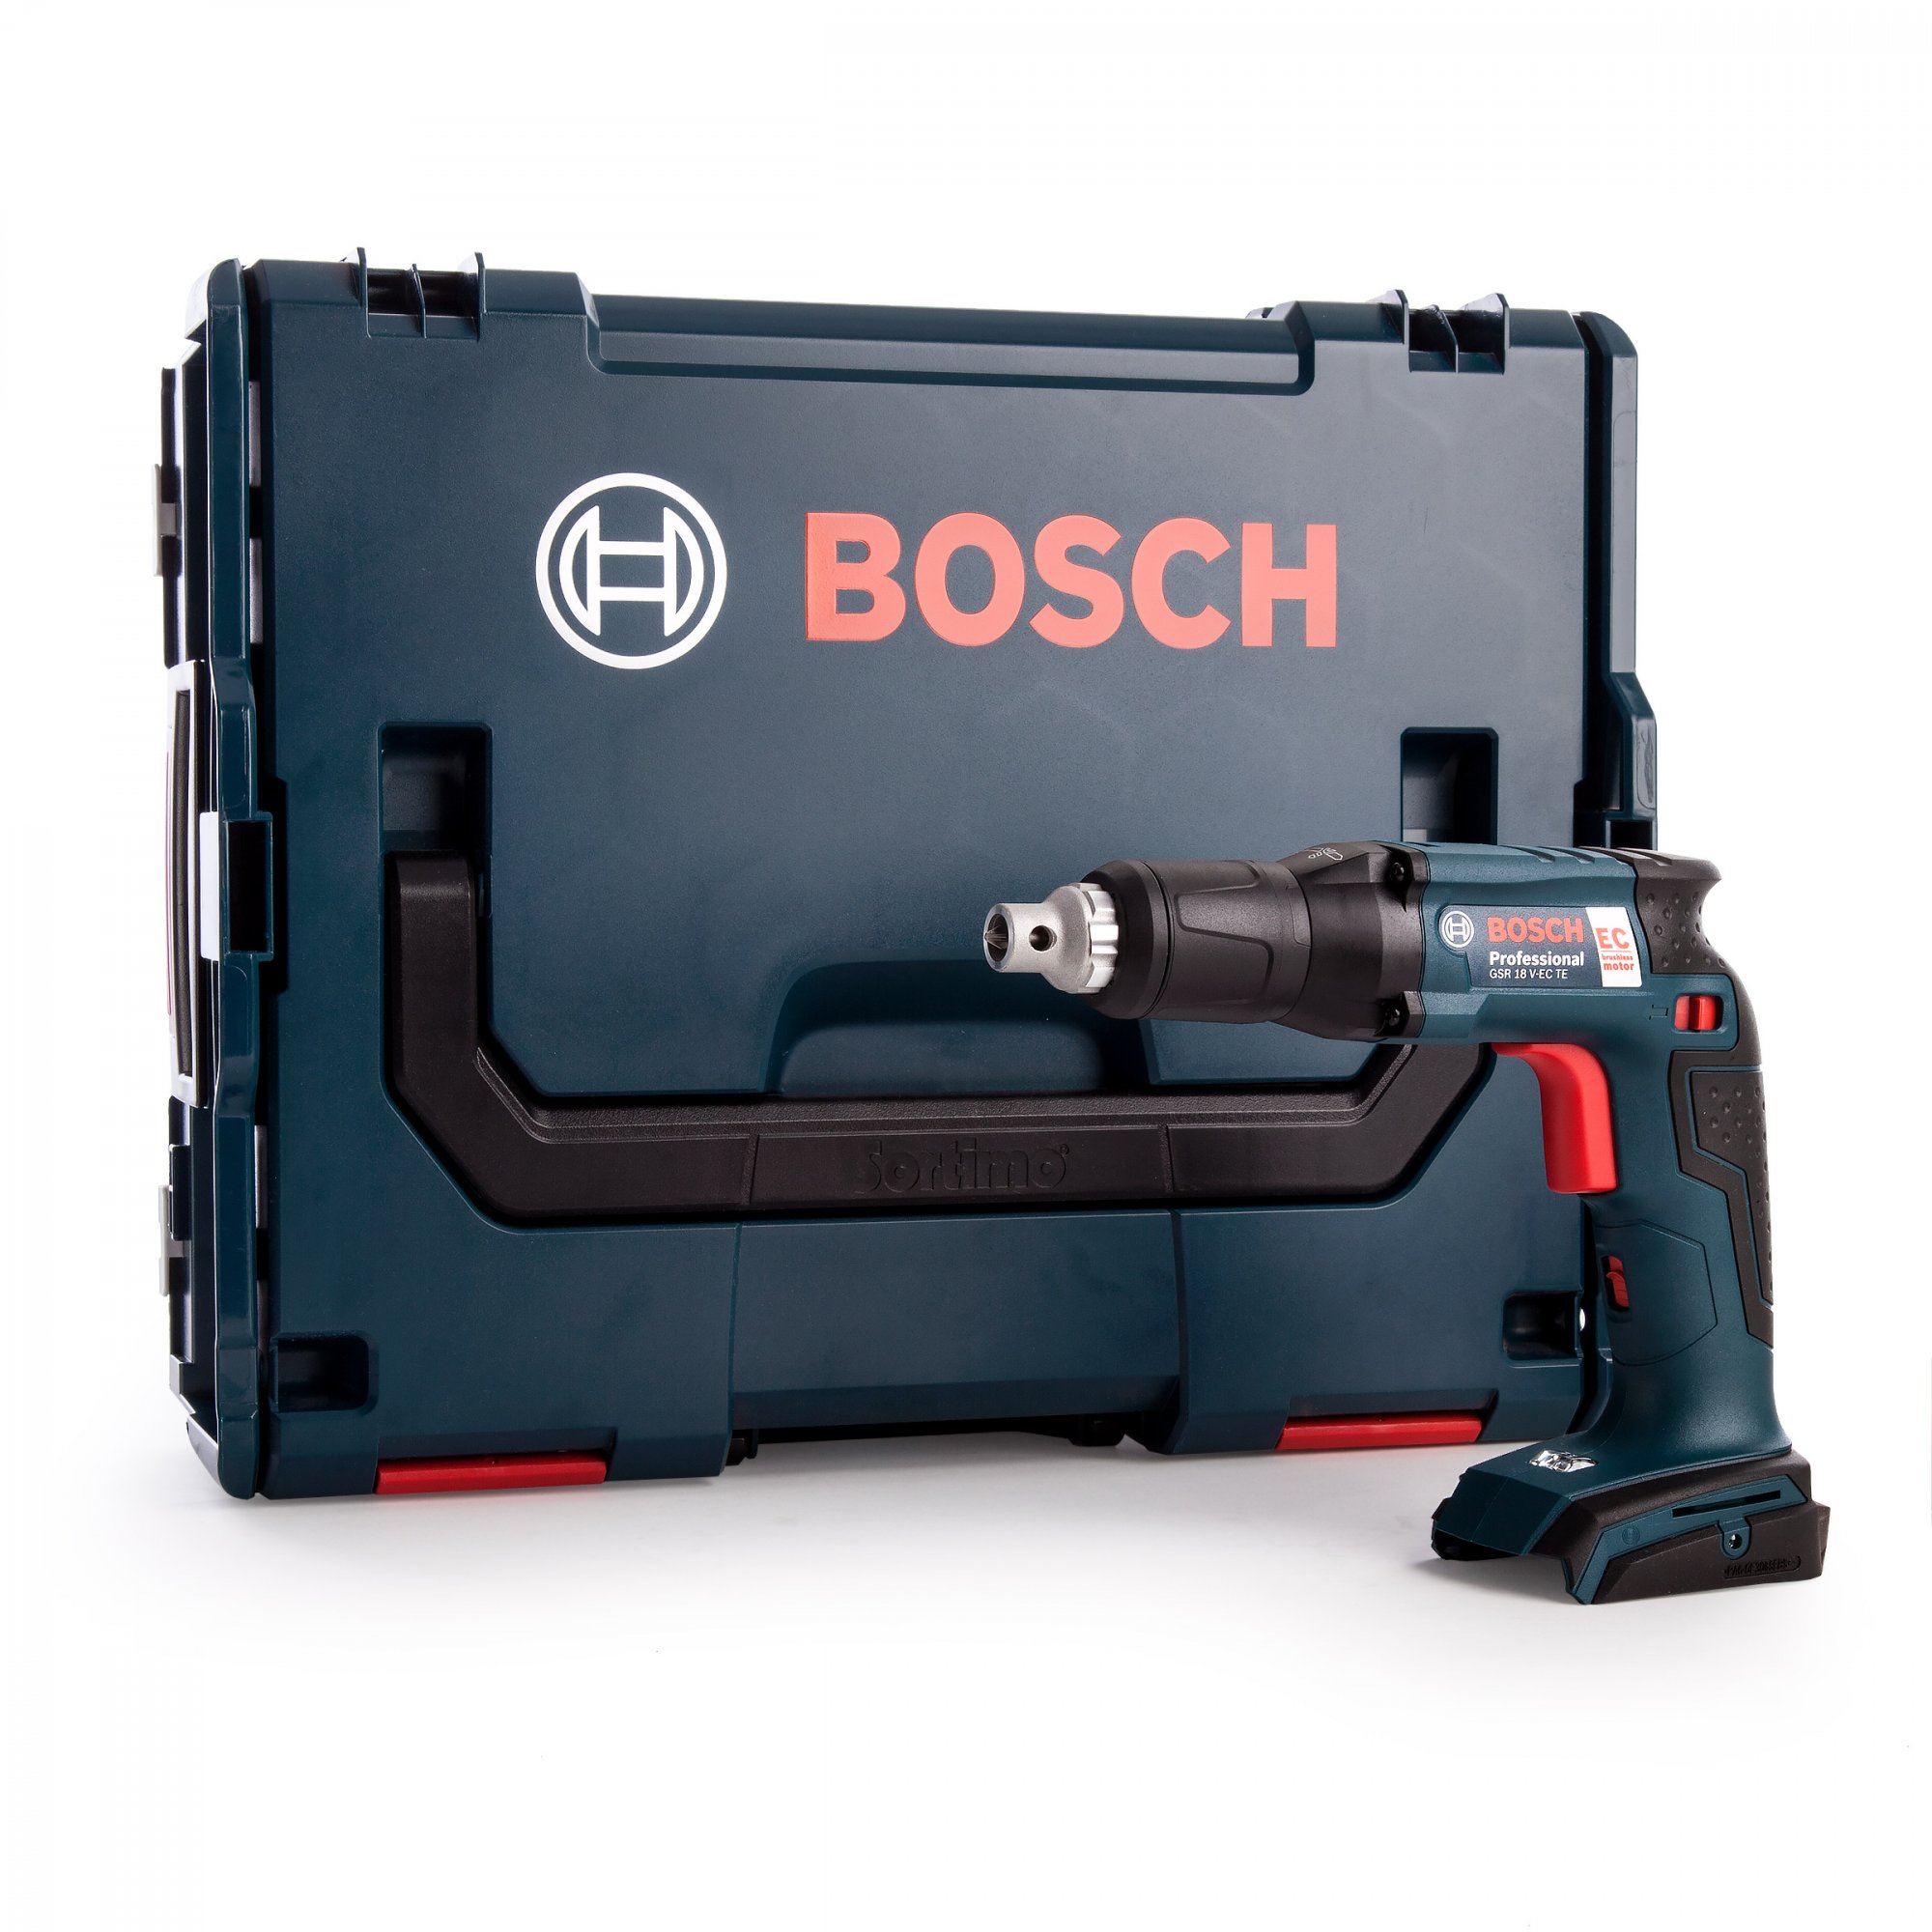 Bosch GSR 18 V-EC TE SOLO 18V Li-Ion accu gipsschroefmachine body in L-Boxx